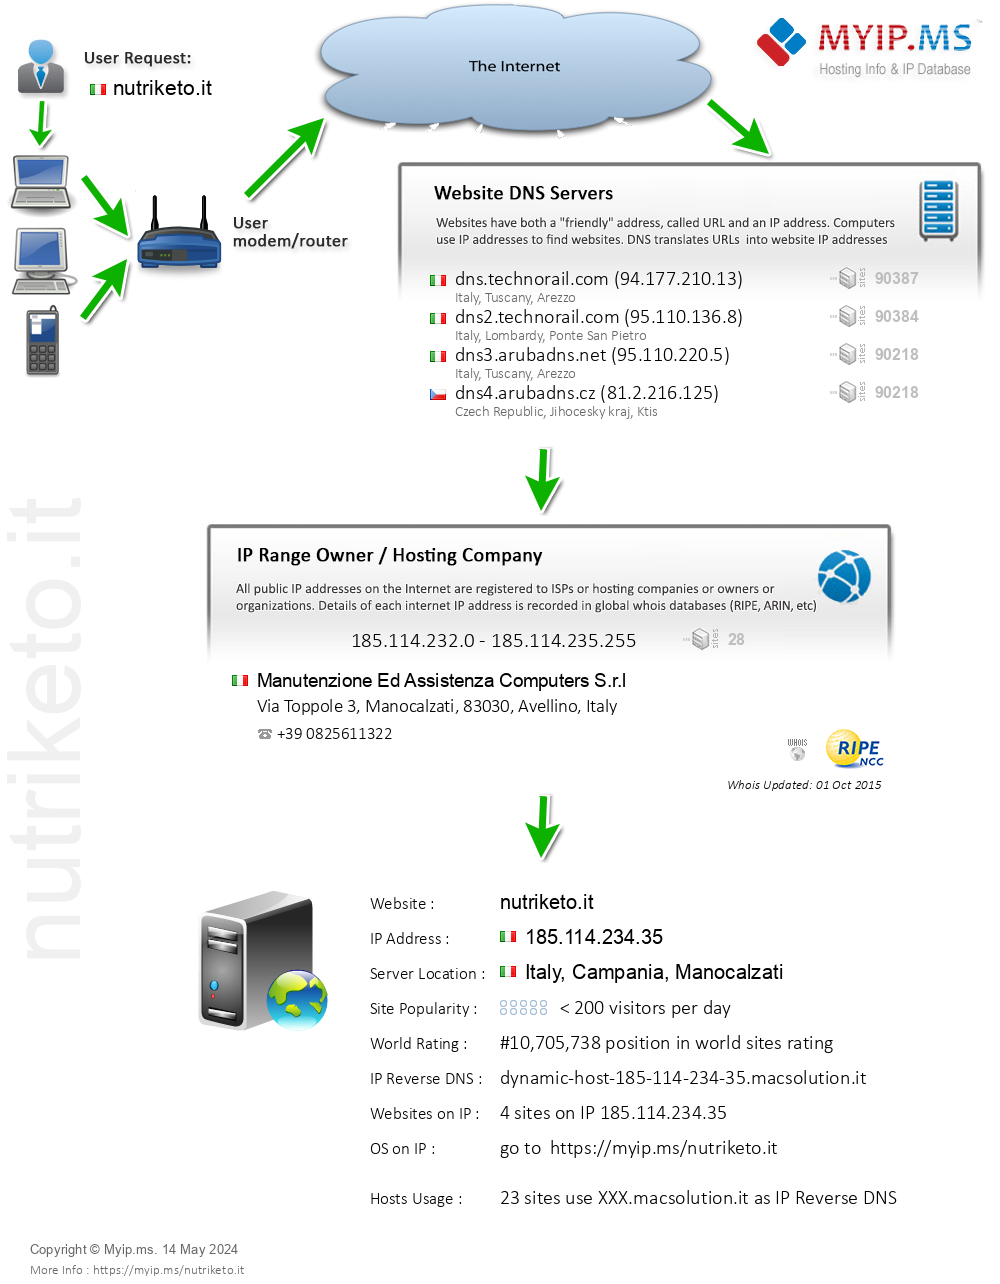 Nutriketo.it - Website Hosting Visual IP Diagram